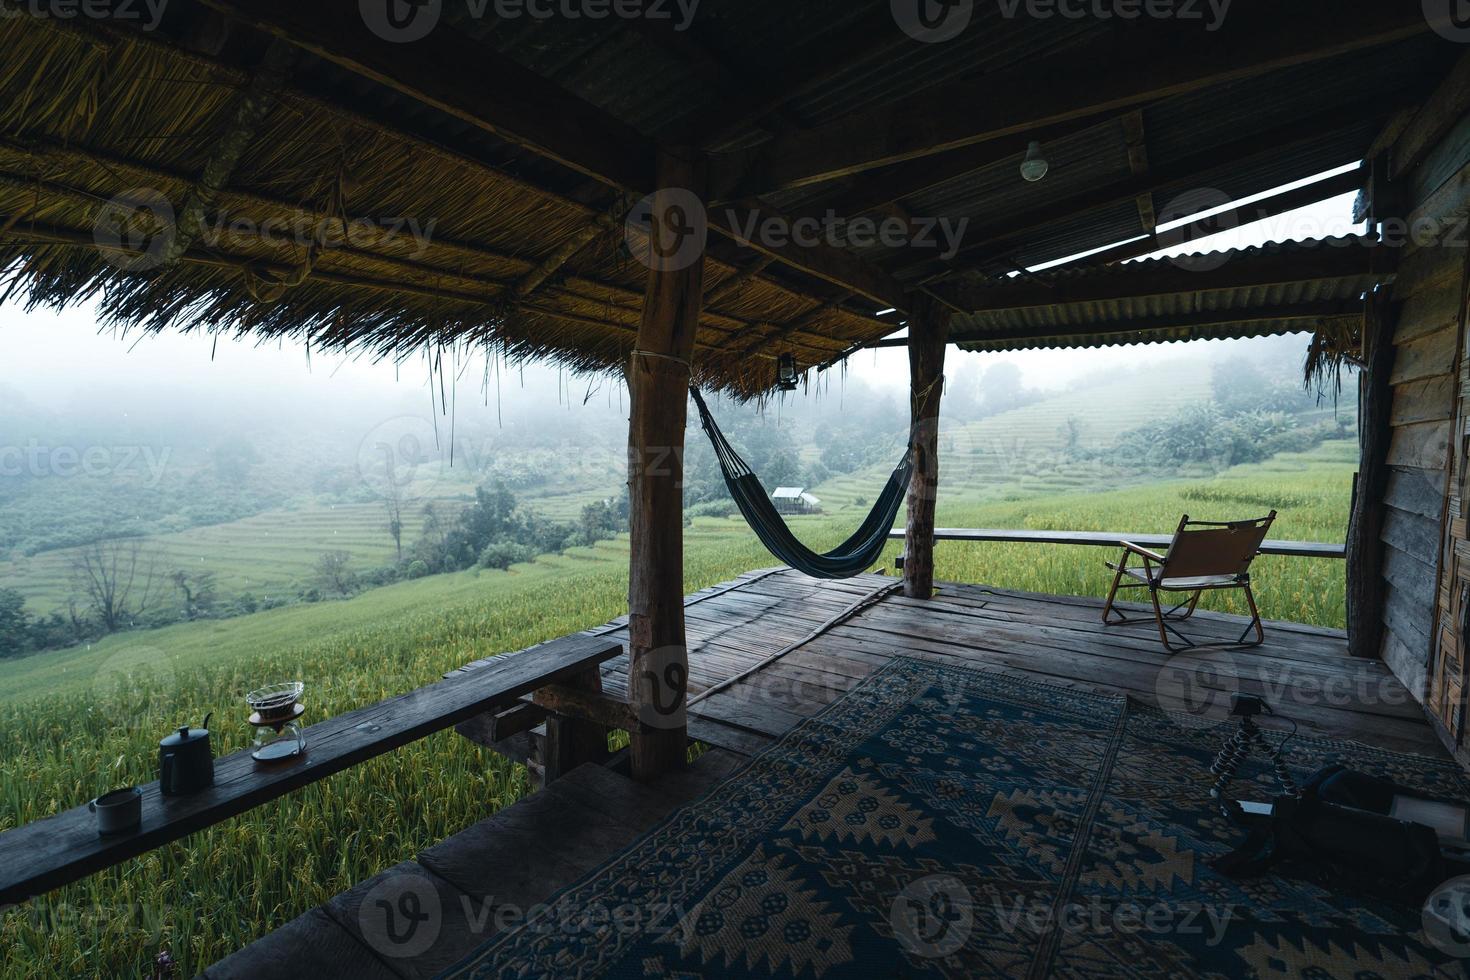 in einer Holzhütte in einem grünen Reisfeld foto